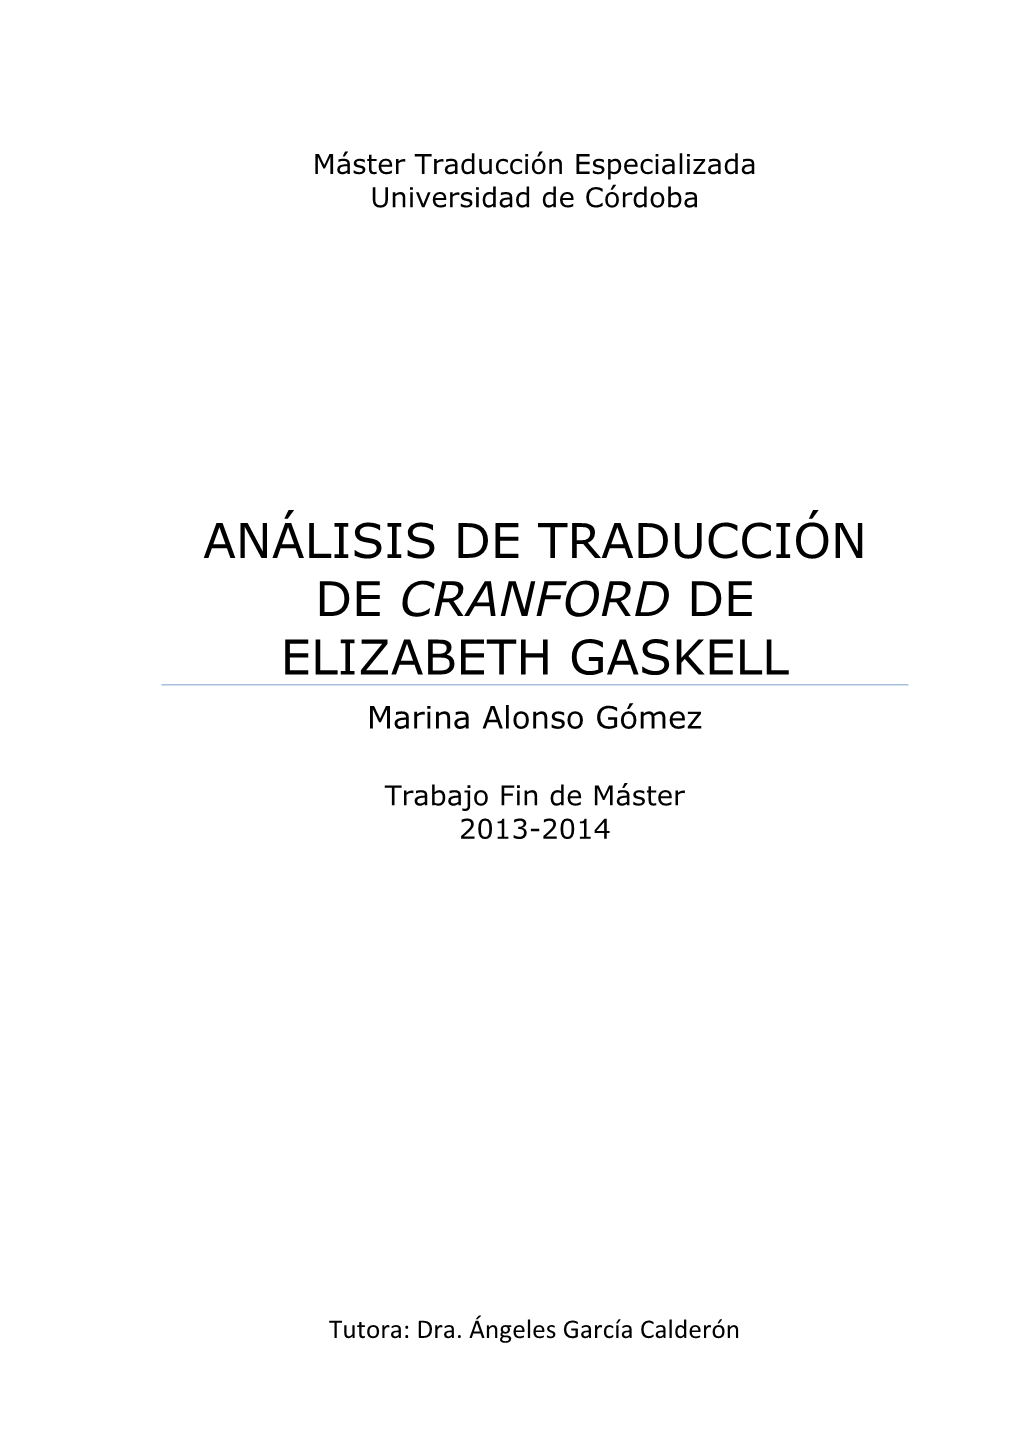 ANÁLISIS DE TRADUCCIÓN DE CRANFORD DE ELIZABETH GASKELL Marina Alonso Gómez